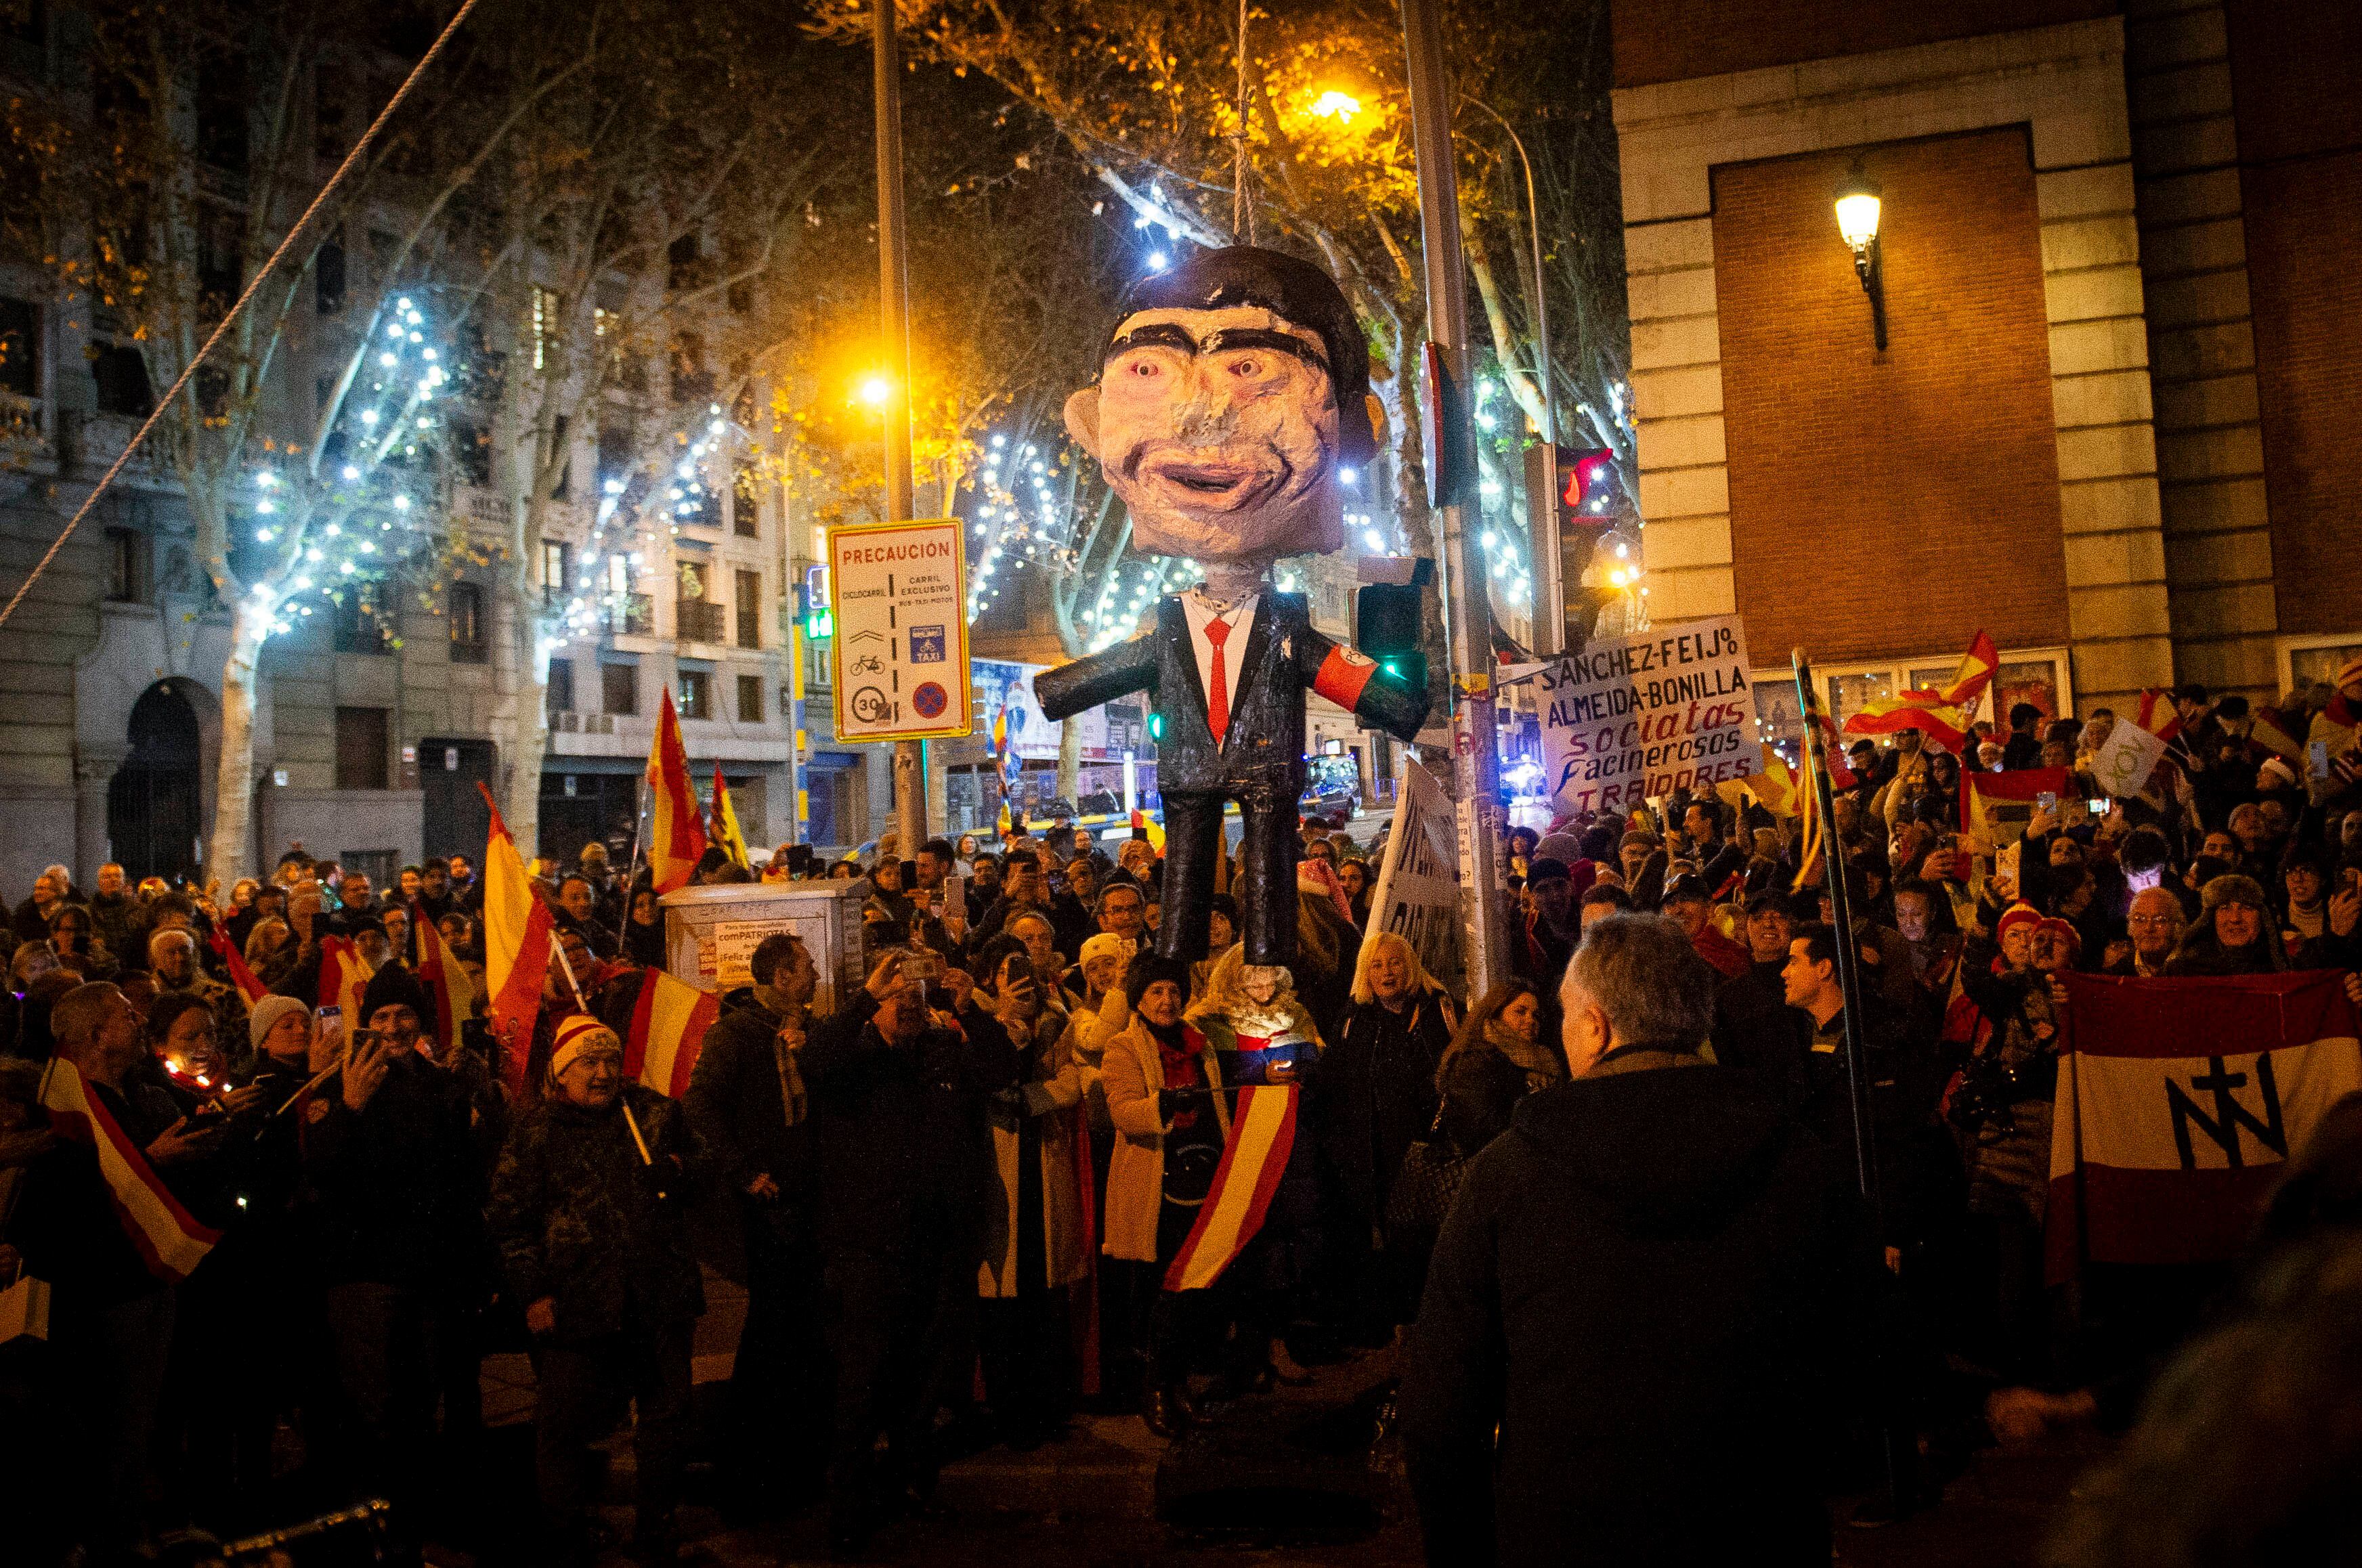 Muñeco simulando Pedro Sánchez que fue apaleado en Nochevieja en las inmediaciones de la sede del PSOE en la calle madrileña de Ferraz. 